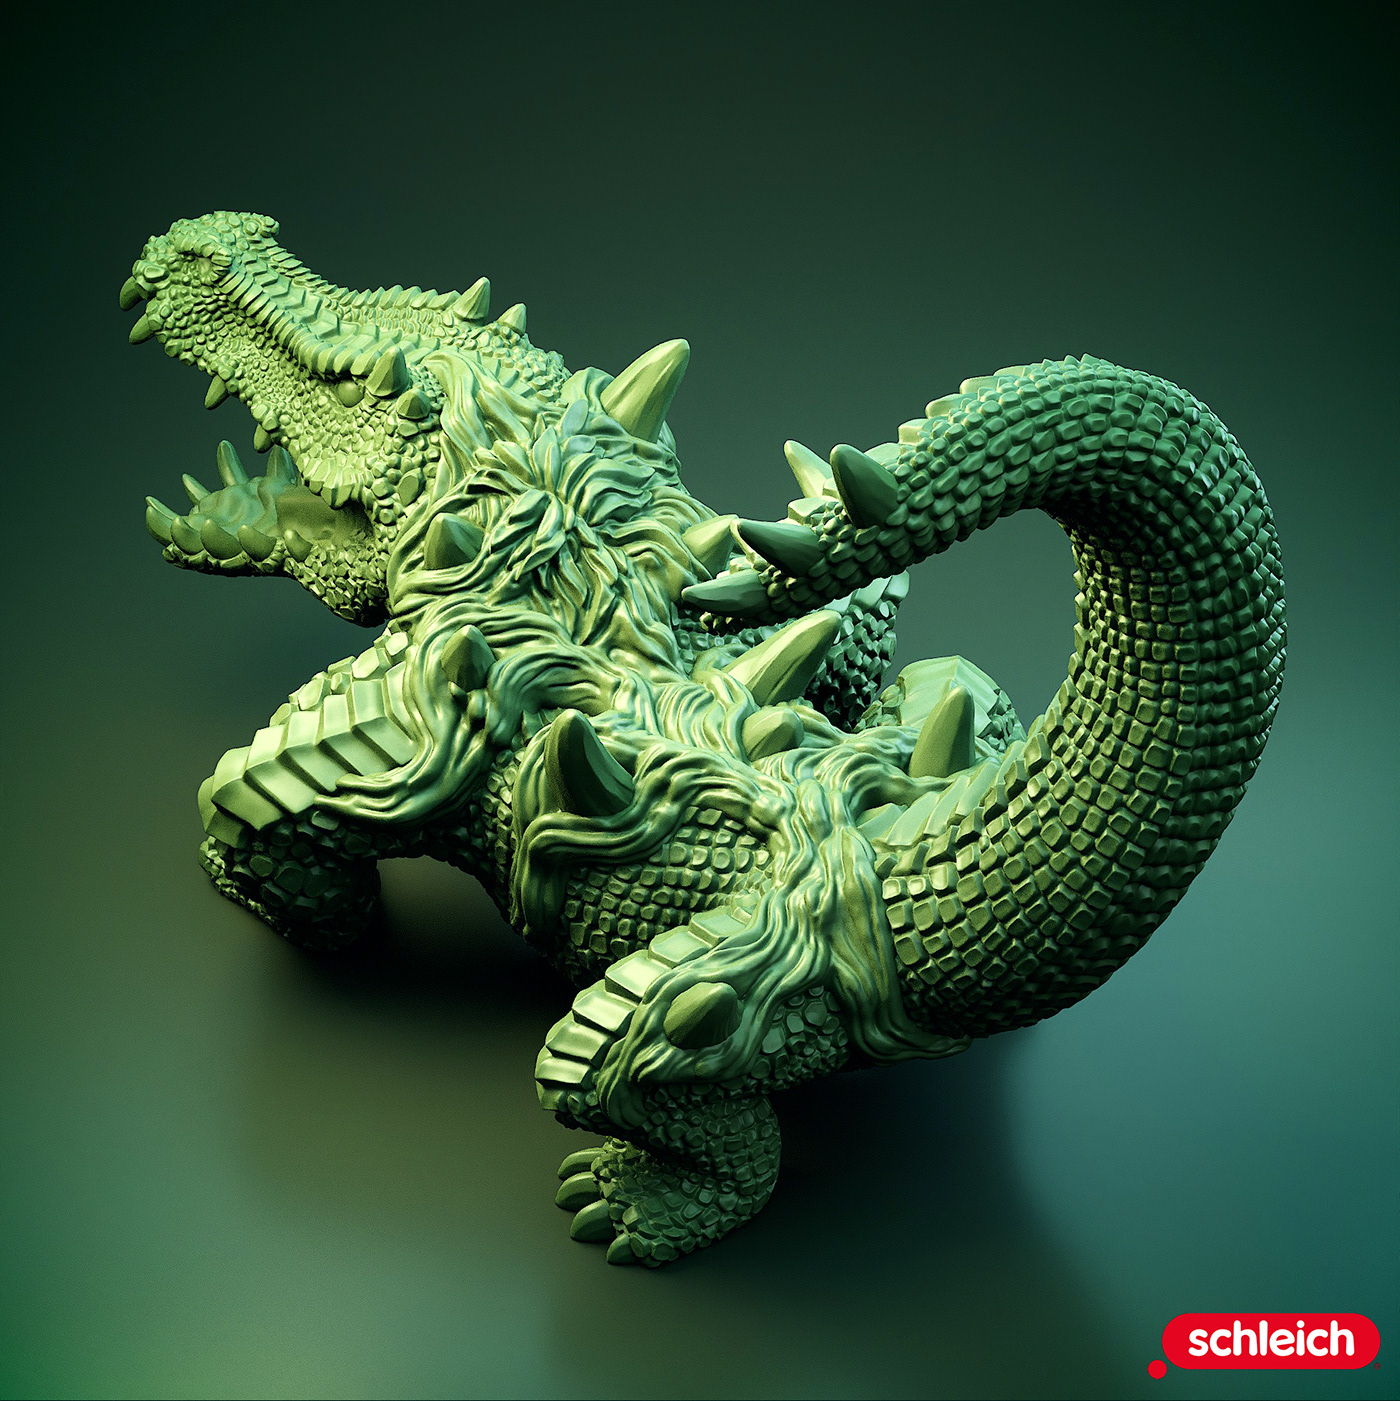 reptile toys toy design  sculpting  Zbrush conceptart animals creatures conceptualdesign creaturedesign